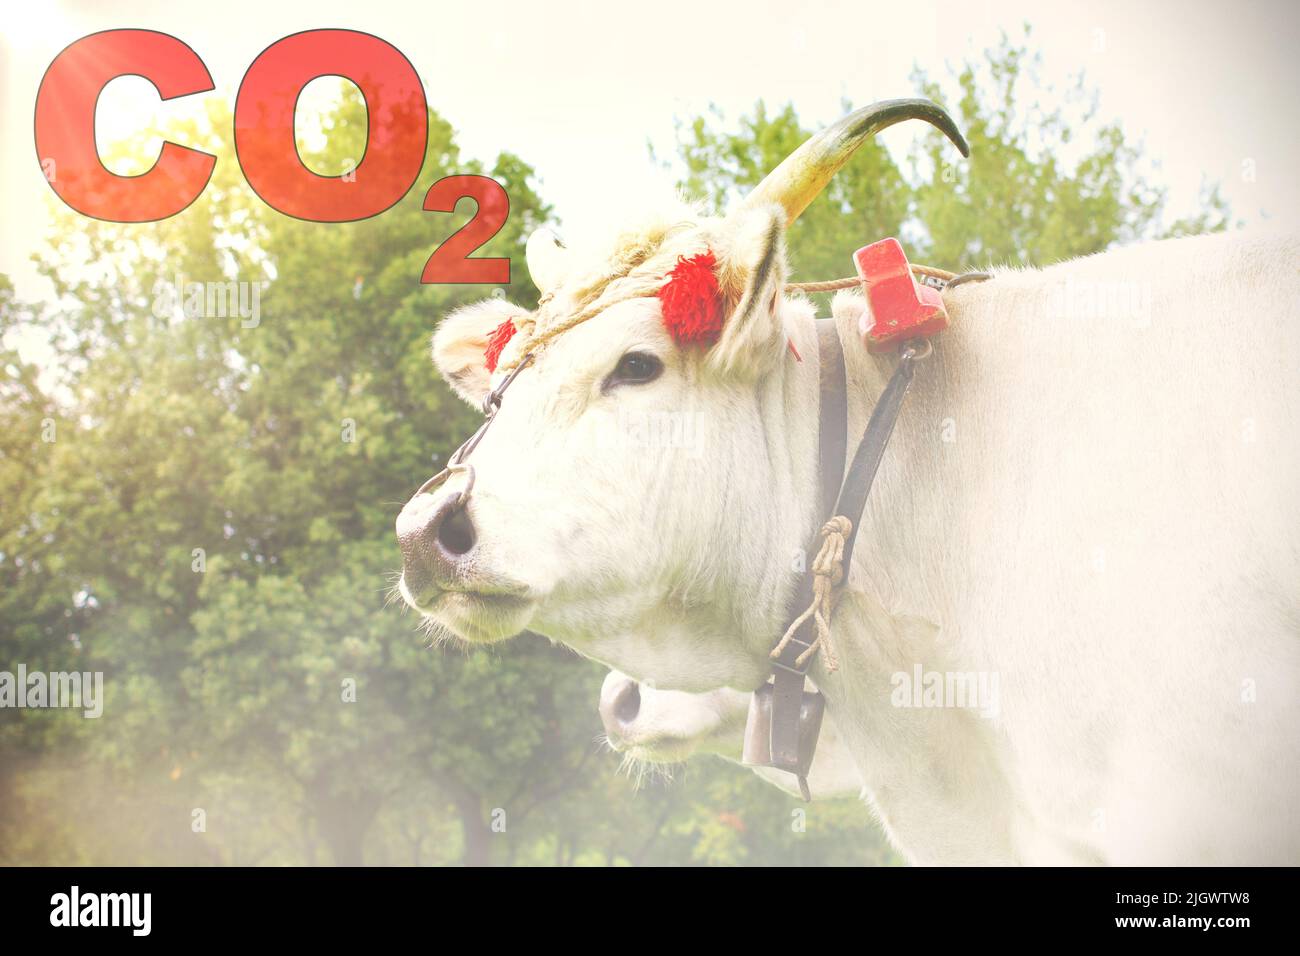 Vache blanche domestique dans une ferme avec le texte 'CO2' et effet de fumée. Concept de pollution. Banque D'Images